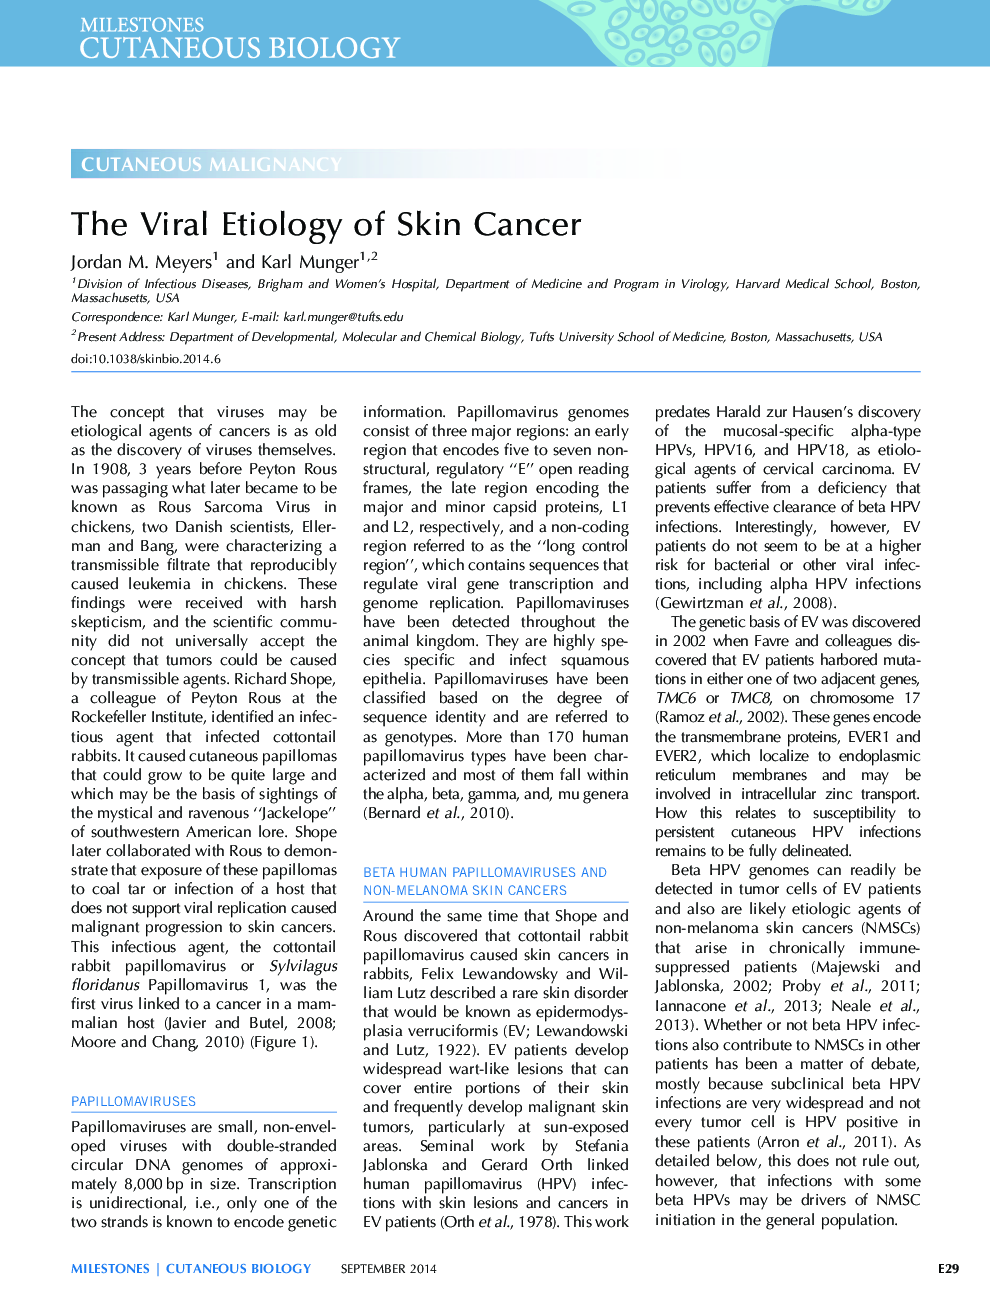 علت ویروسی سرطان پوست 